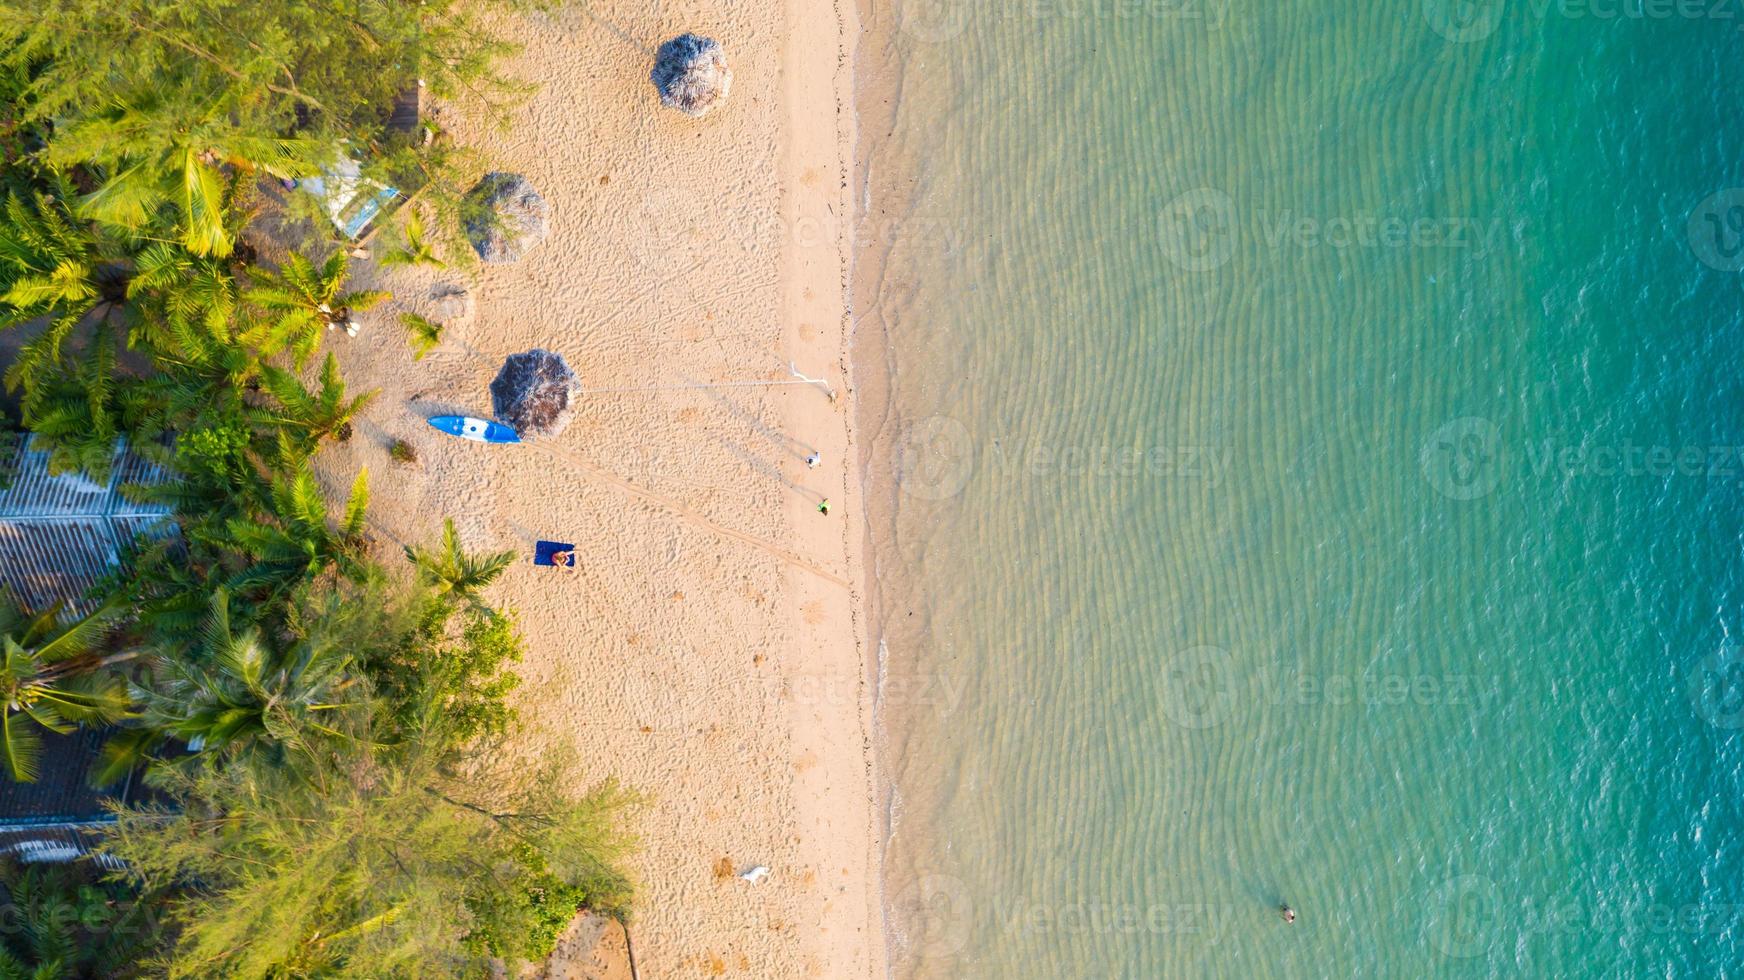 vue aérienne de la plage à l'ombre de l'eau bleu émeraude et de la mousse des vagues sur la mer tropicale photo